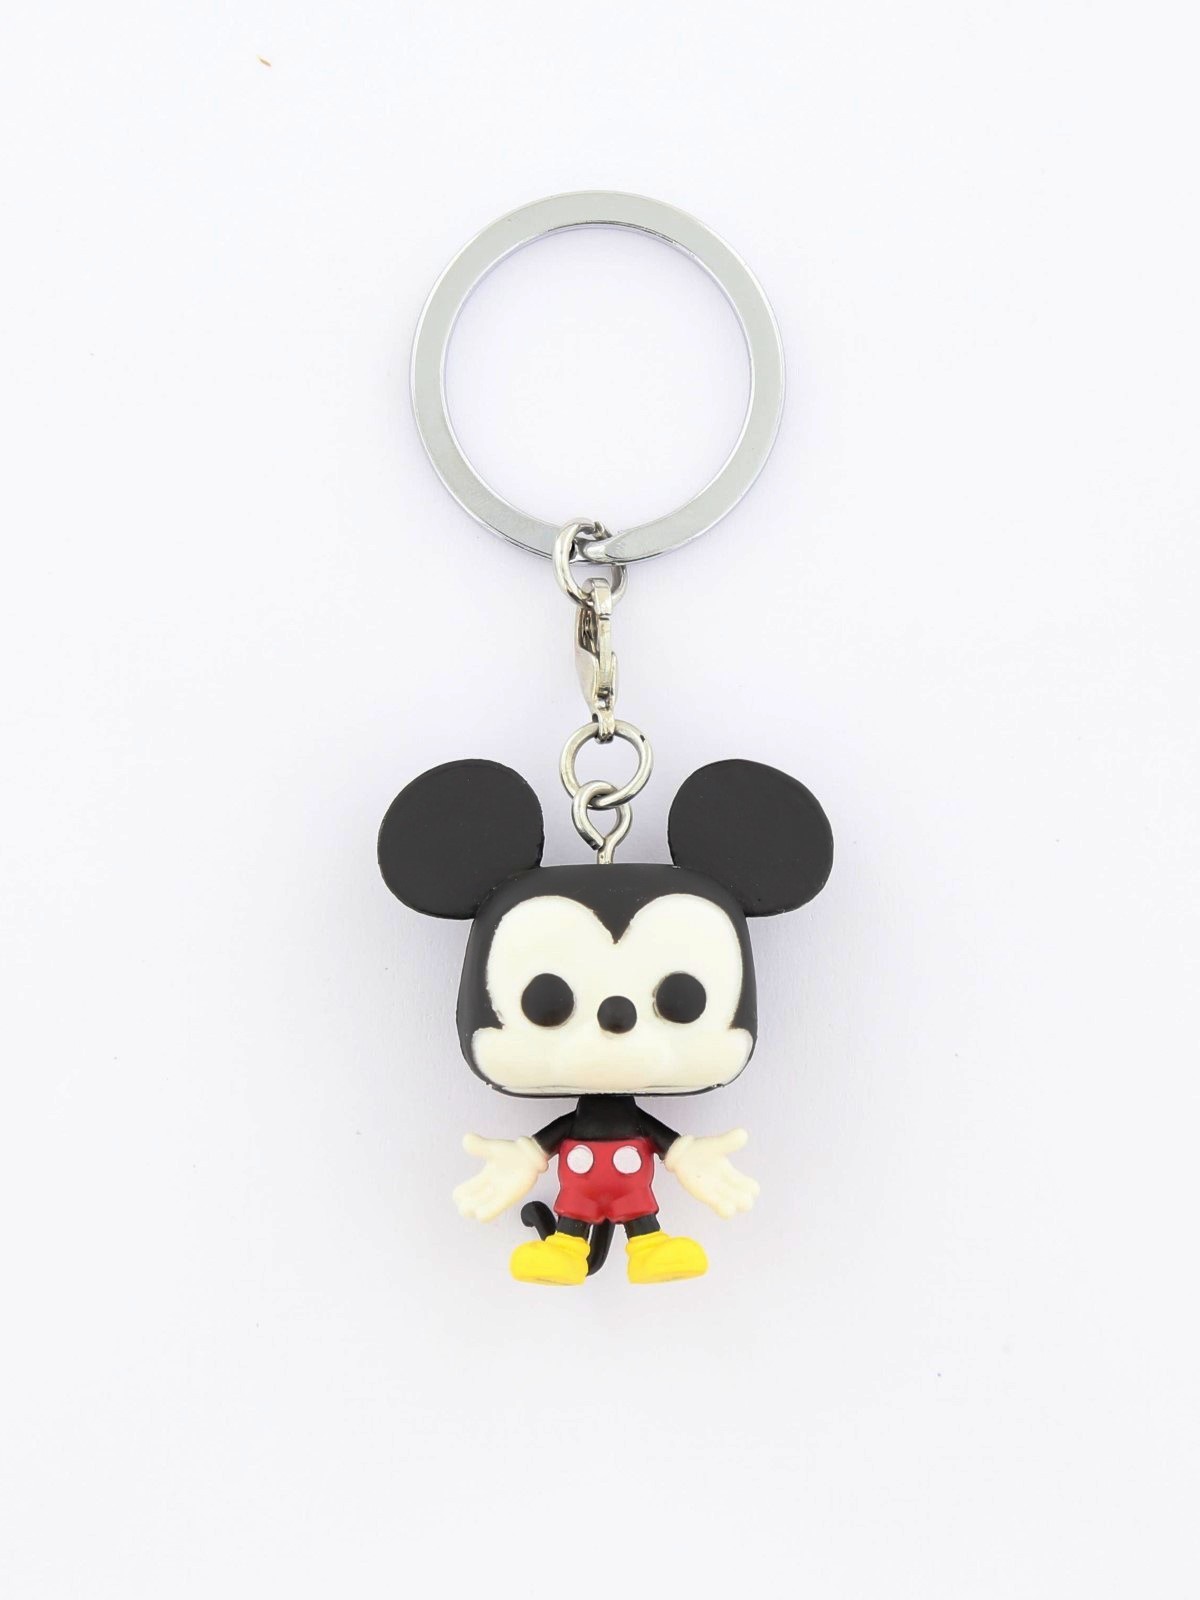 Funko Pocket Pop Disney Mickey Keychain